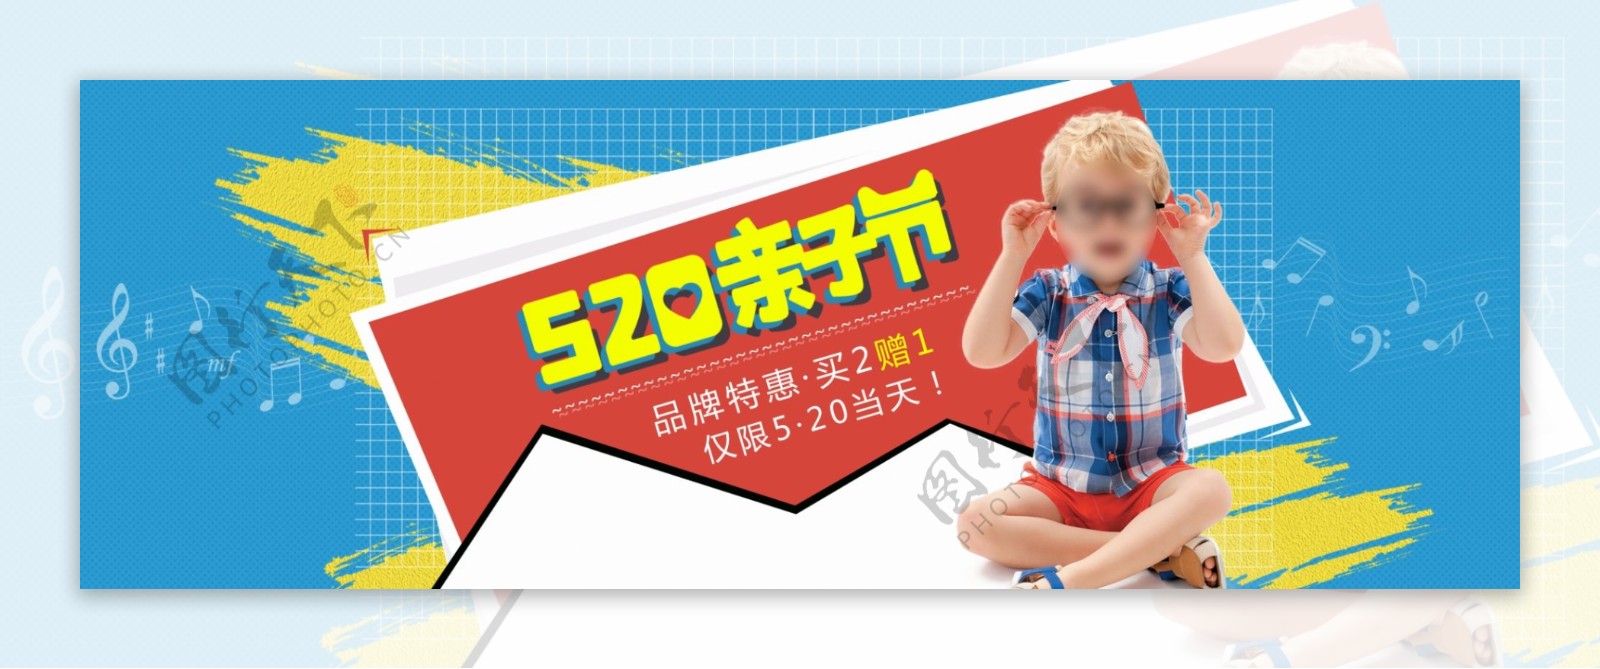 七夕节海洋色520亲子节童装海报